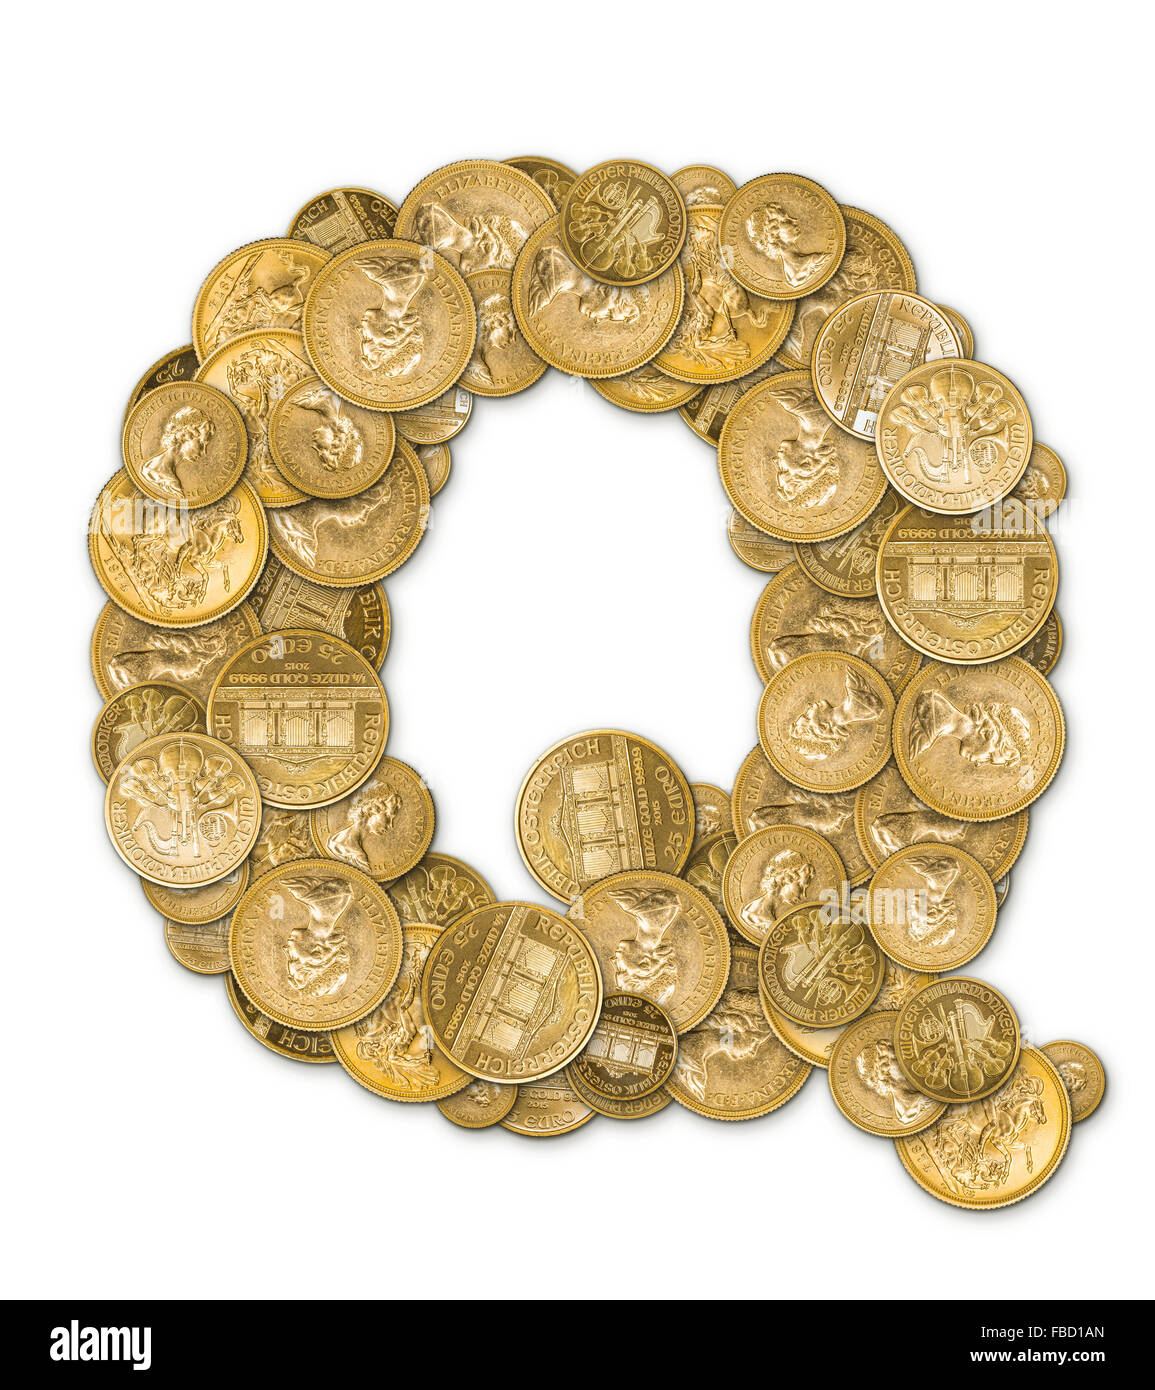 Lettre Q fabriqués à partir de pièces d'or argent isolé sur fond blanc Banque D'Images